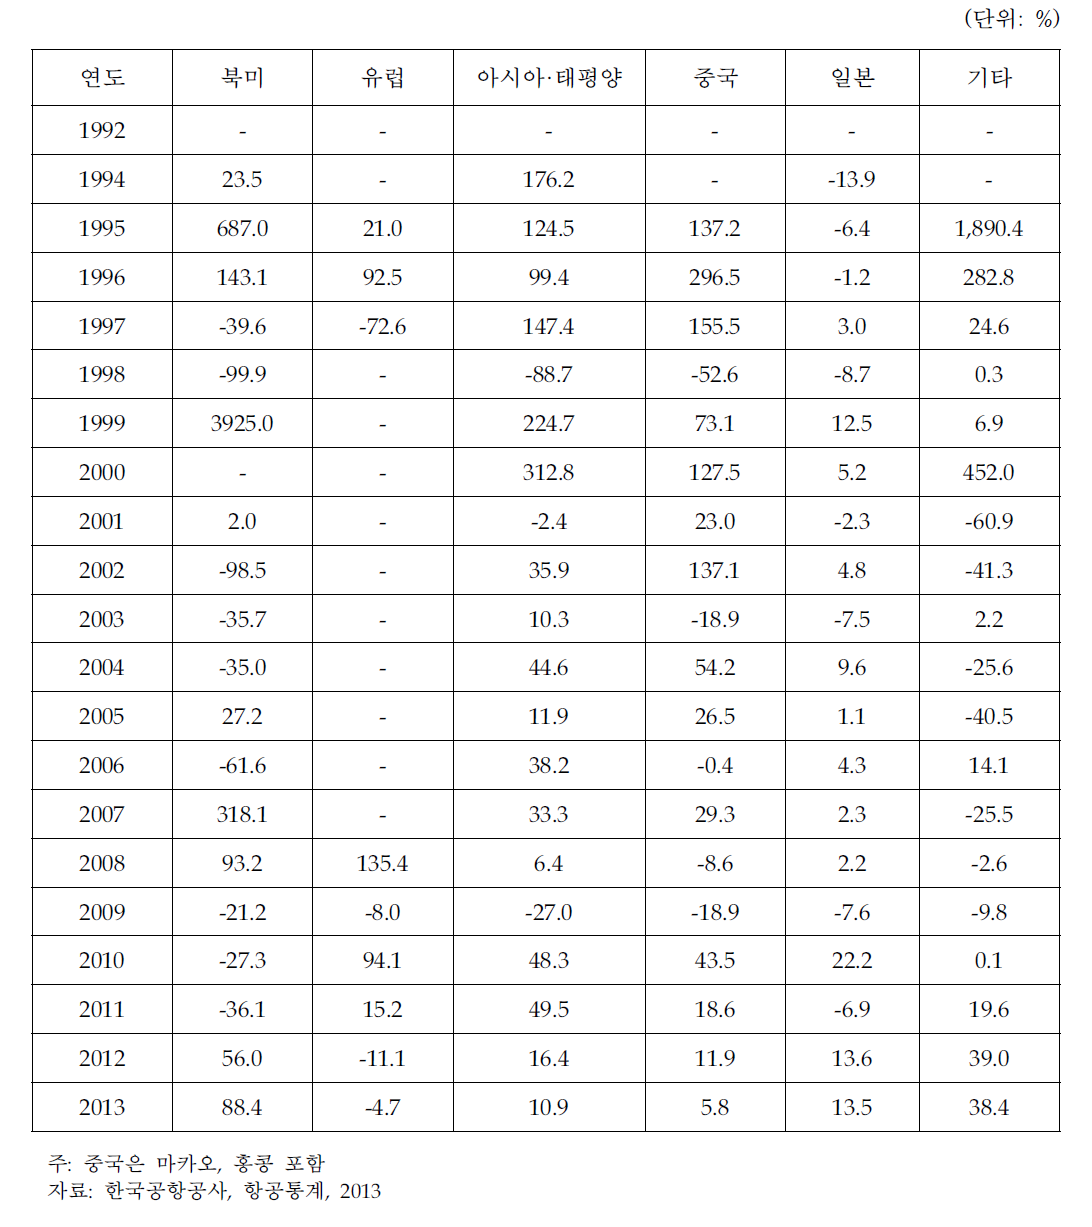 김해공항 지역별 전년대비 증감율